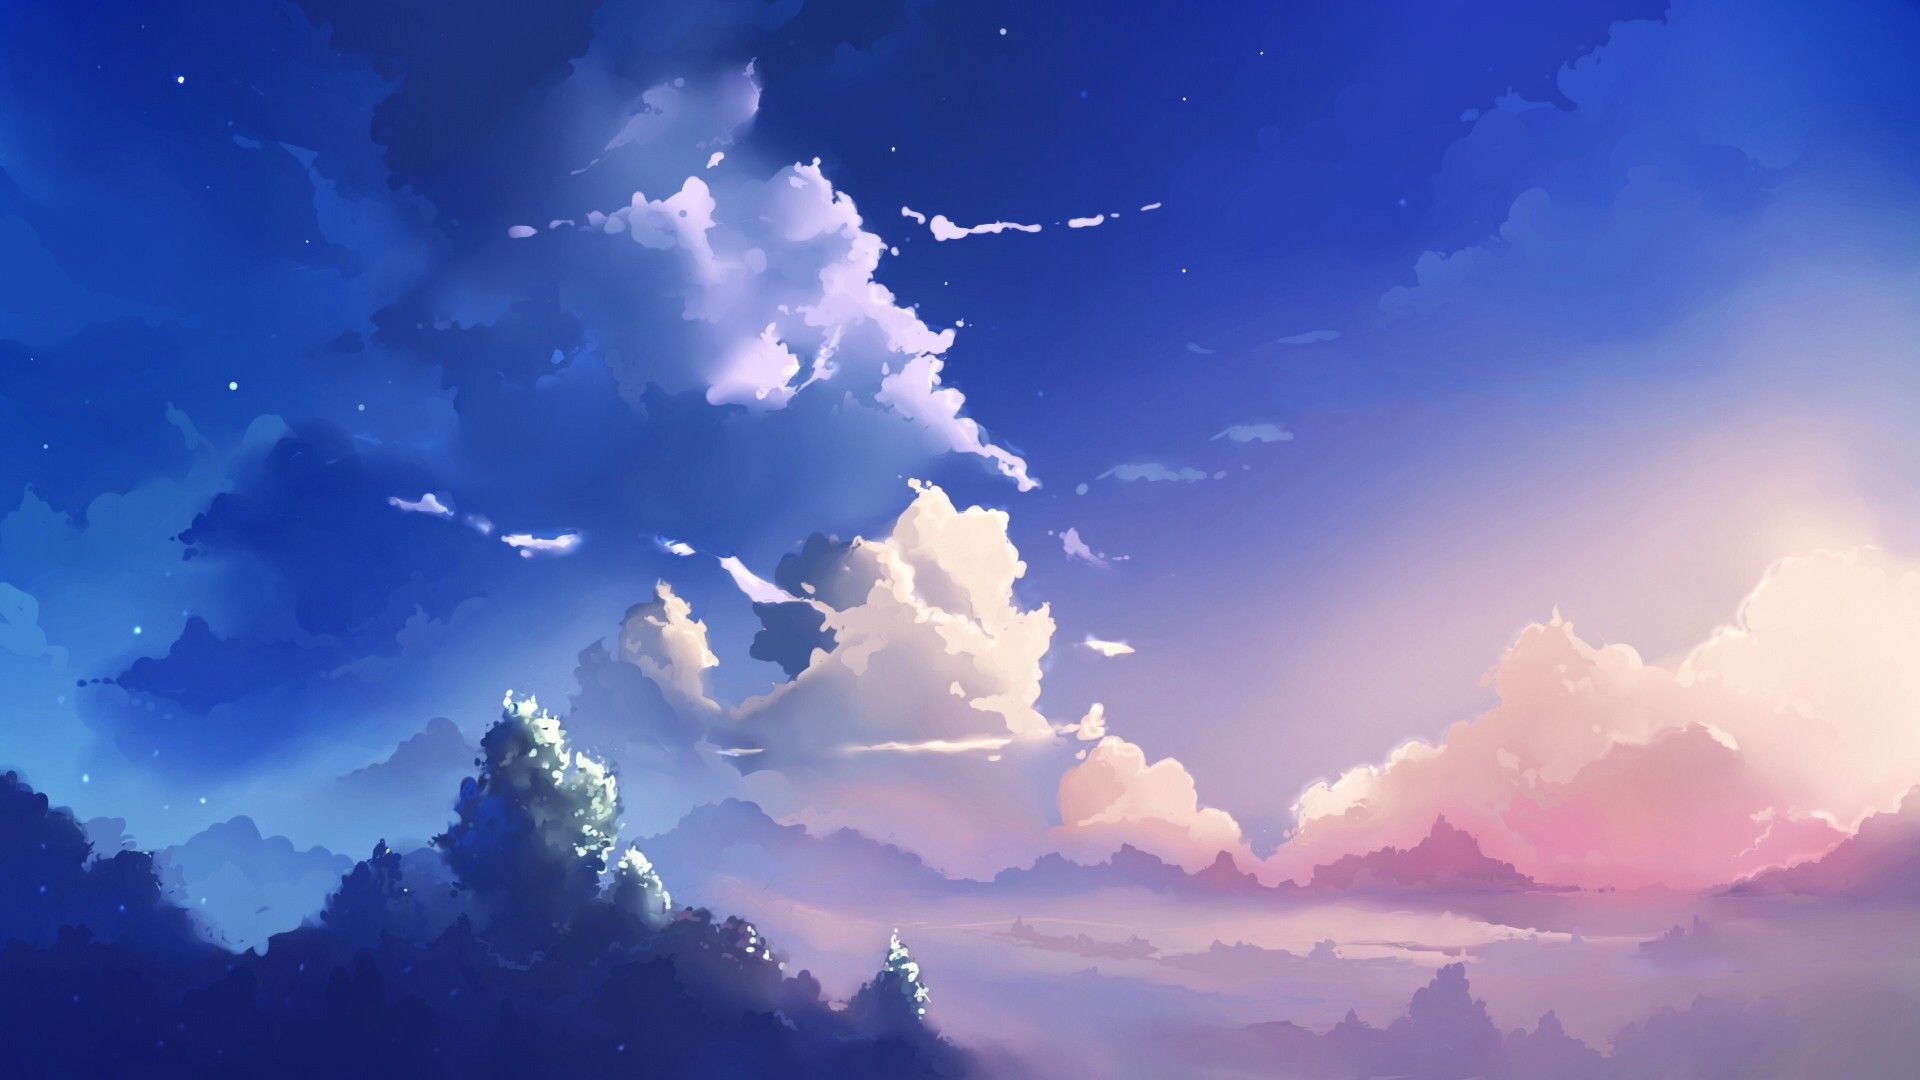 Hình nền đám mây Anime sẽ khiến trái tim bạn rung động vì sự độc đáo và đầy màu sắc. Cùng nhau ngắm nhìn bầu trời với những đám mây to lớn, trắng xóa nhưng lại rất đẹp mắt và lãng mạn. Hãy để cho hình nền này giúp bạn tạo dựng một không gian làm việc và giải trí đầy cảm hứng.